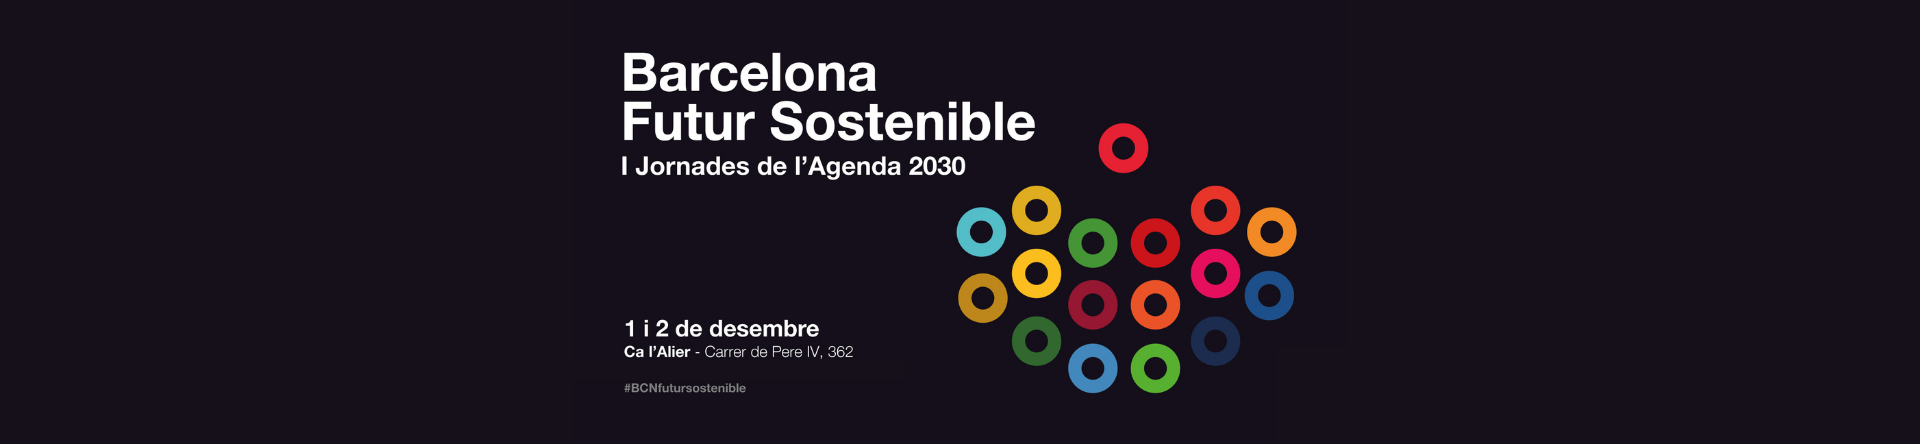 Barcelona Futur Sostenible